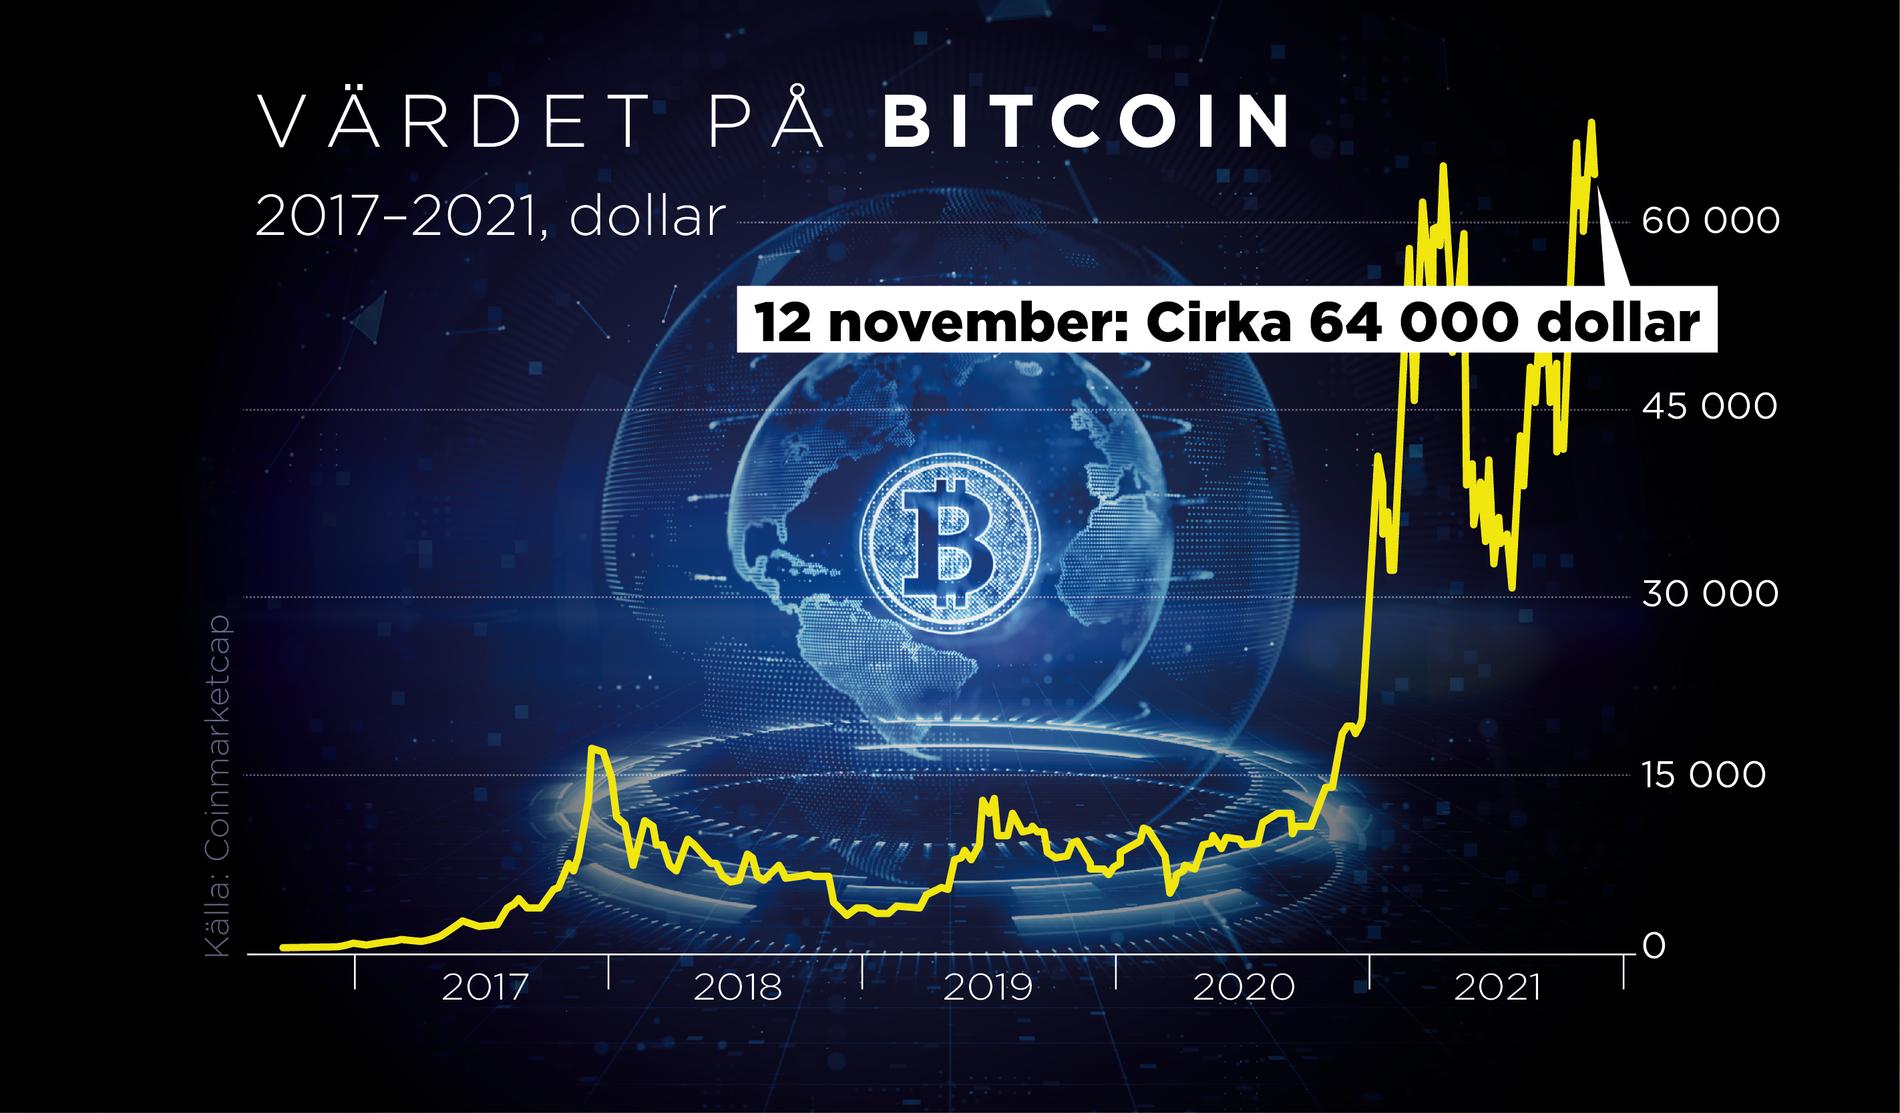 Kryptovalutorna har haft höga toppar och djupa dalar. På bild syns värdet på en bitcoin under perioden 2017–2021 i dollar.